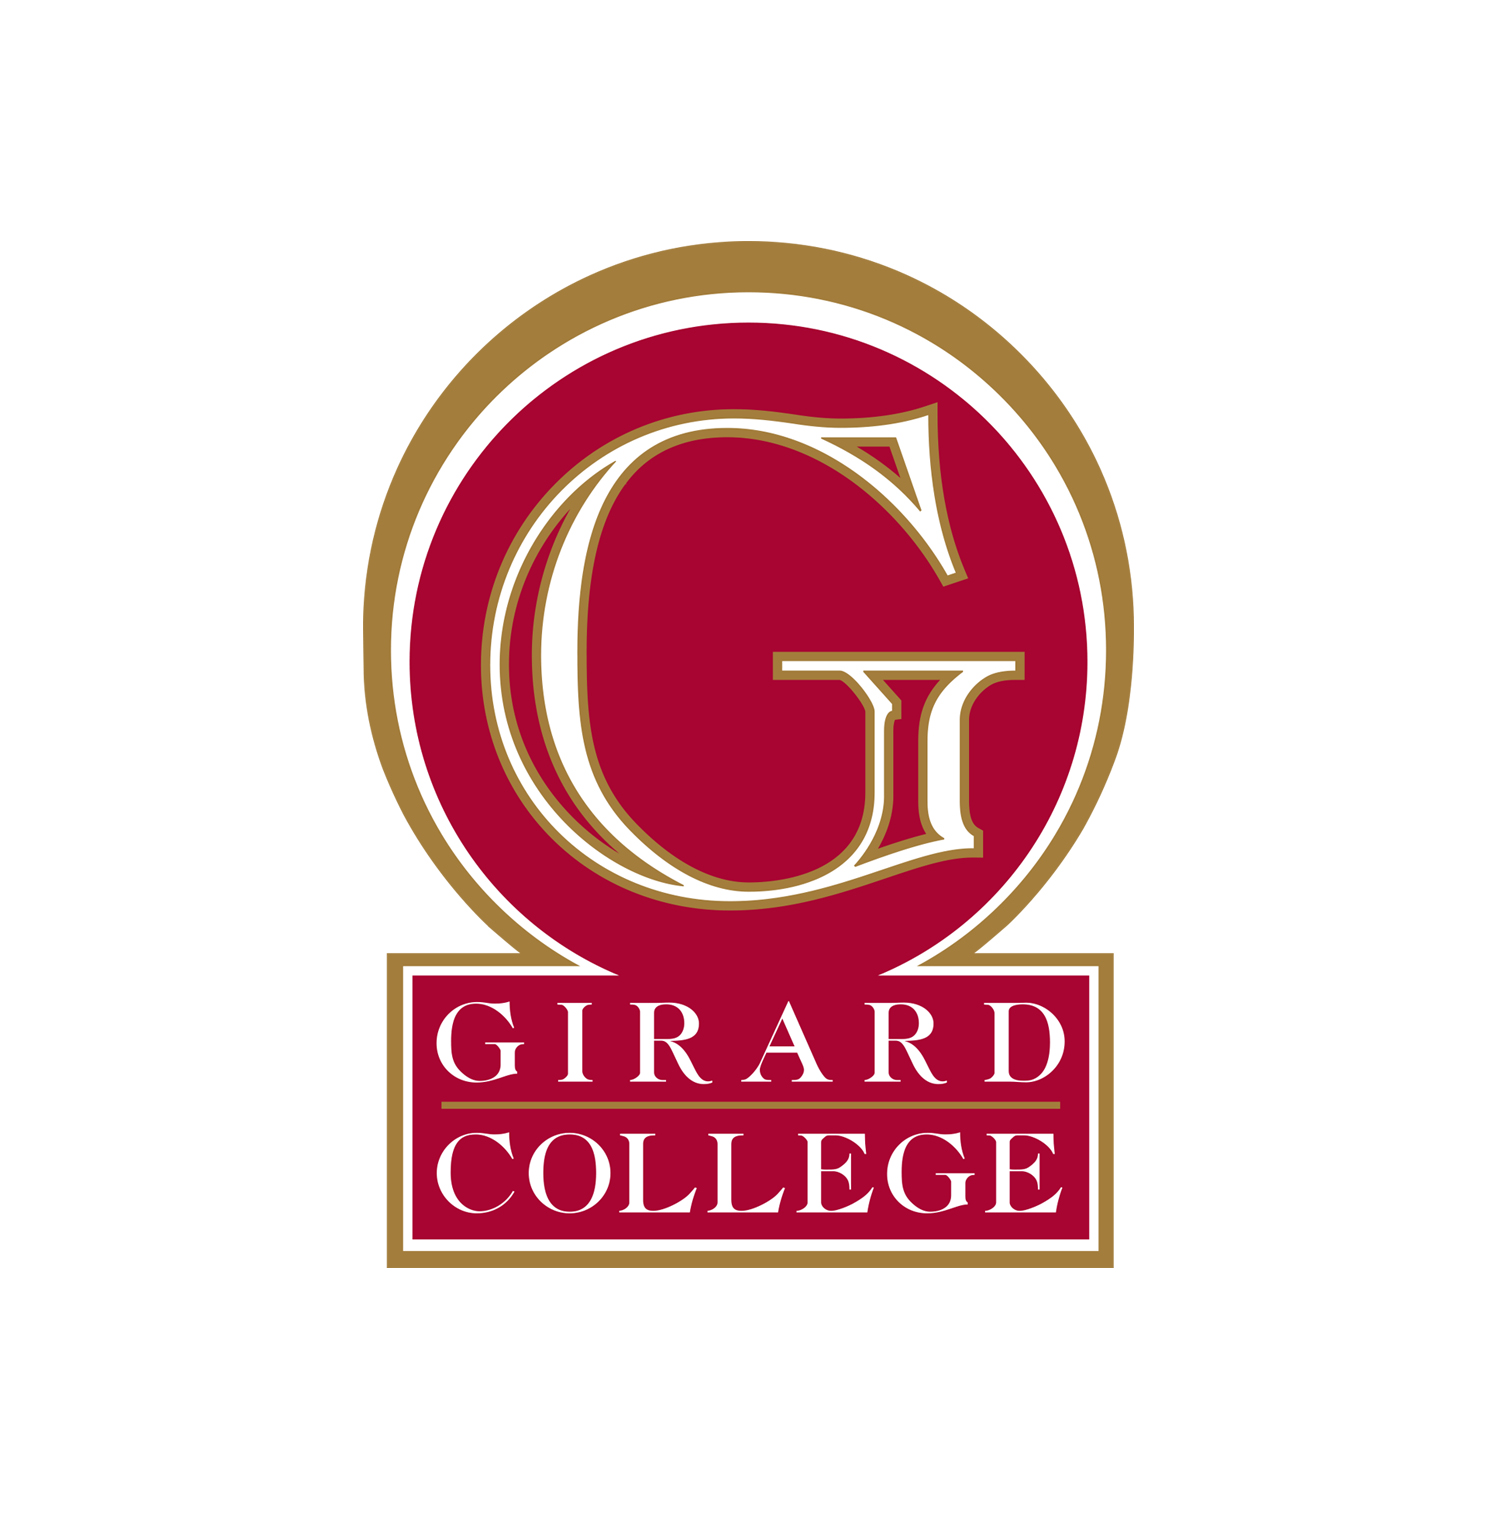 Girard College logo